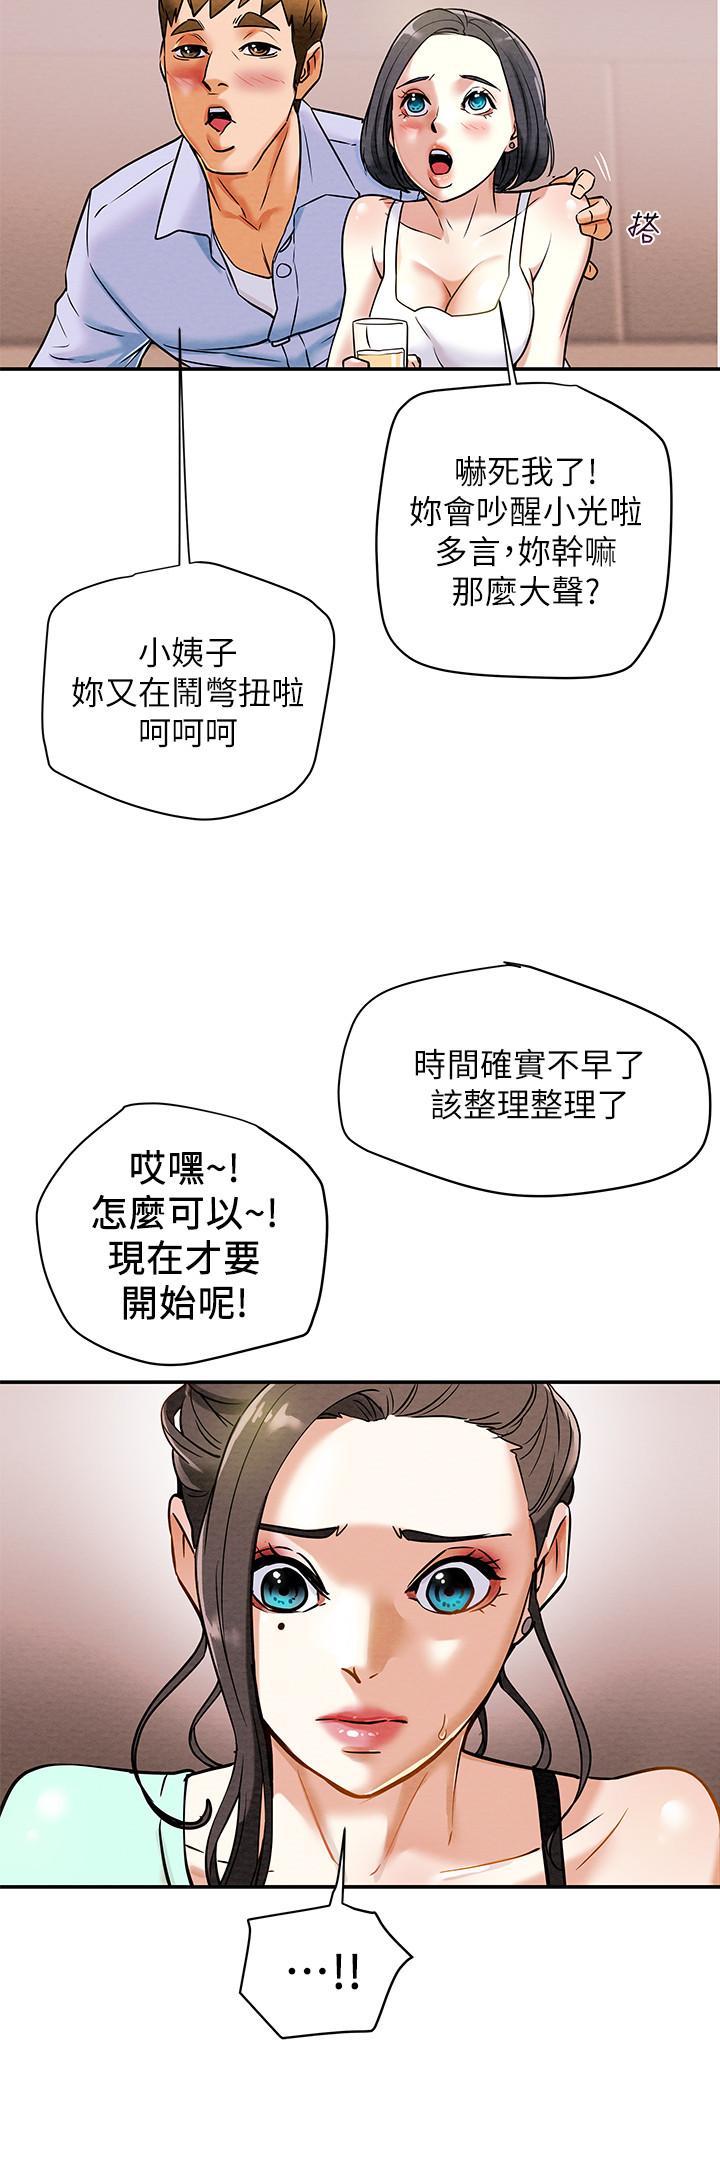 韩国污漫画 純情女攻略計劃 第6话-听着姐姐呻吟声湿了 25